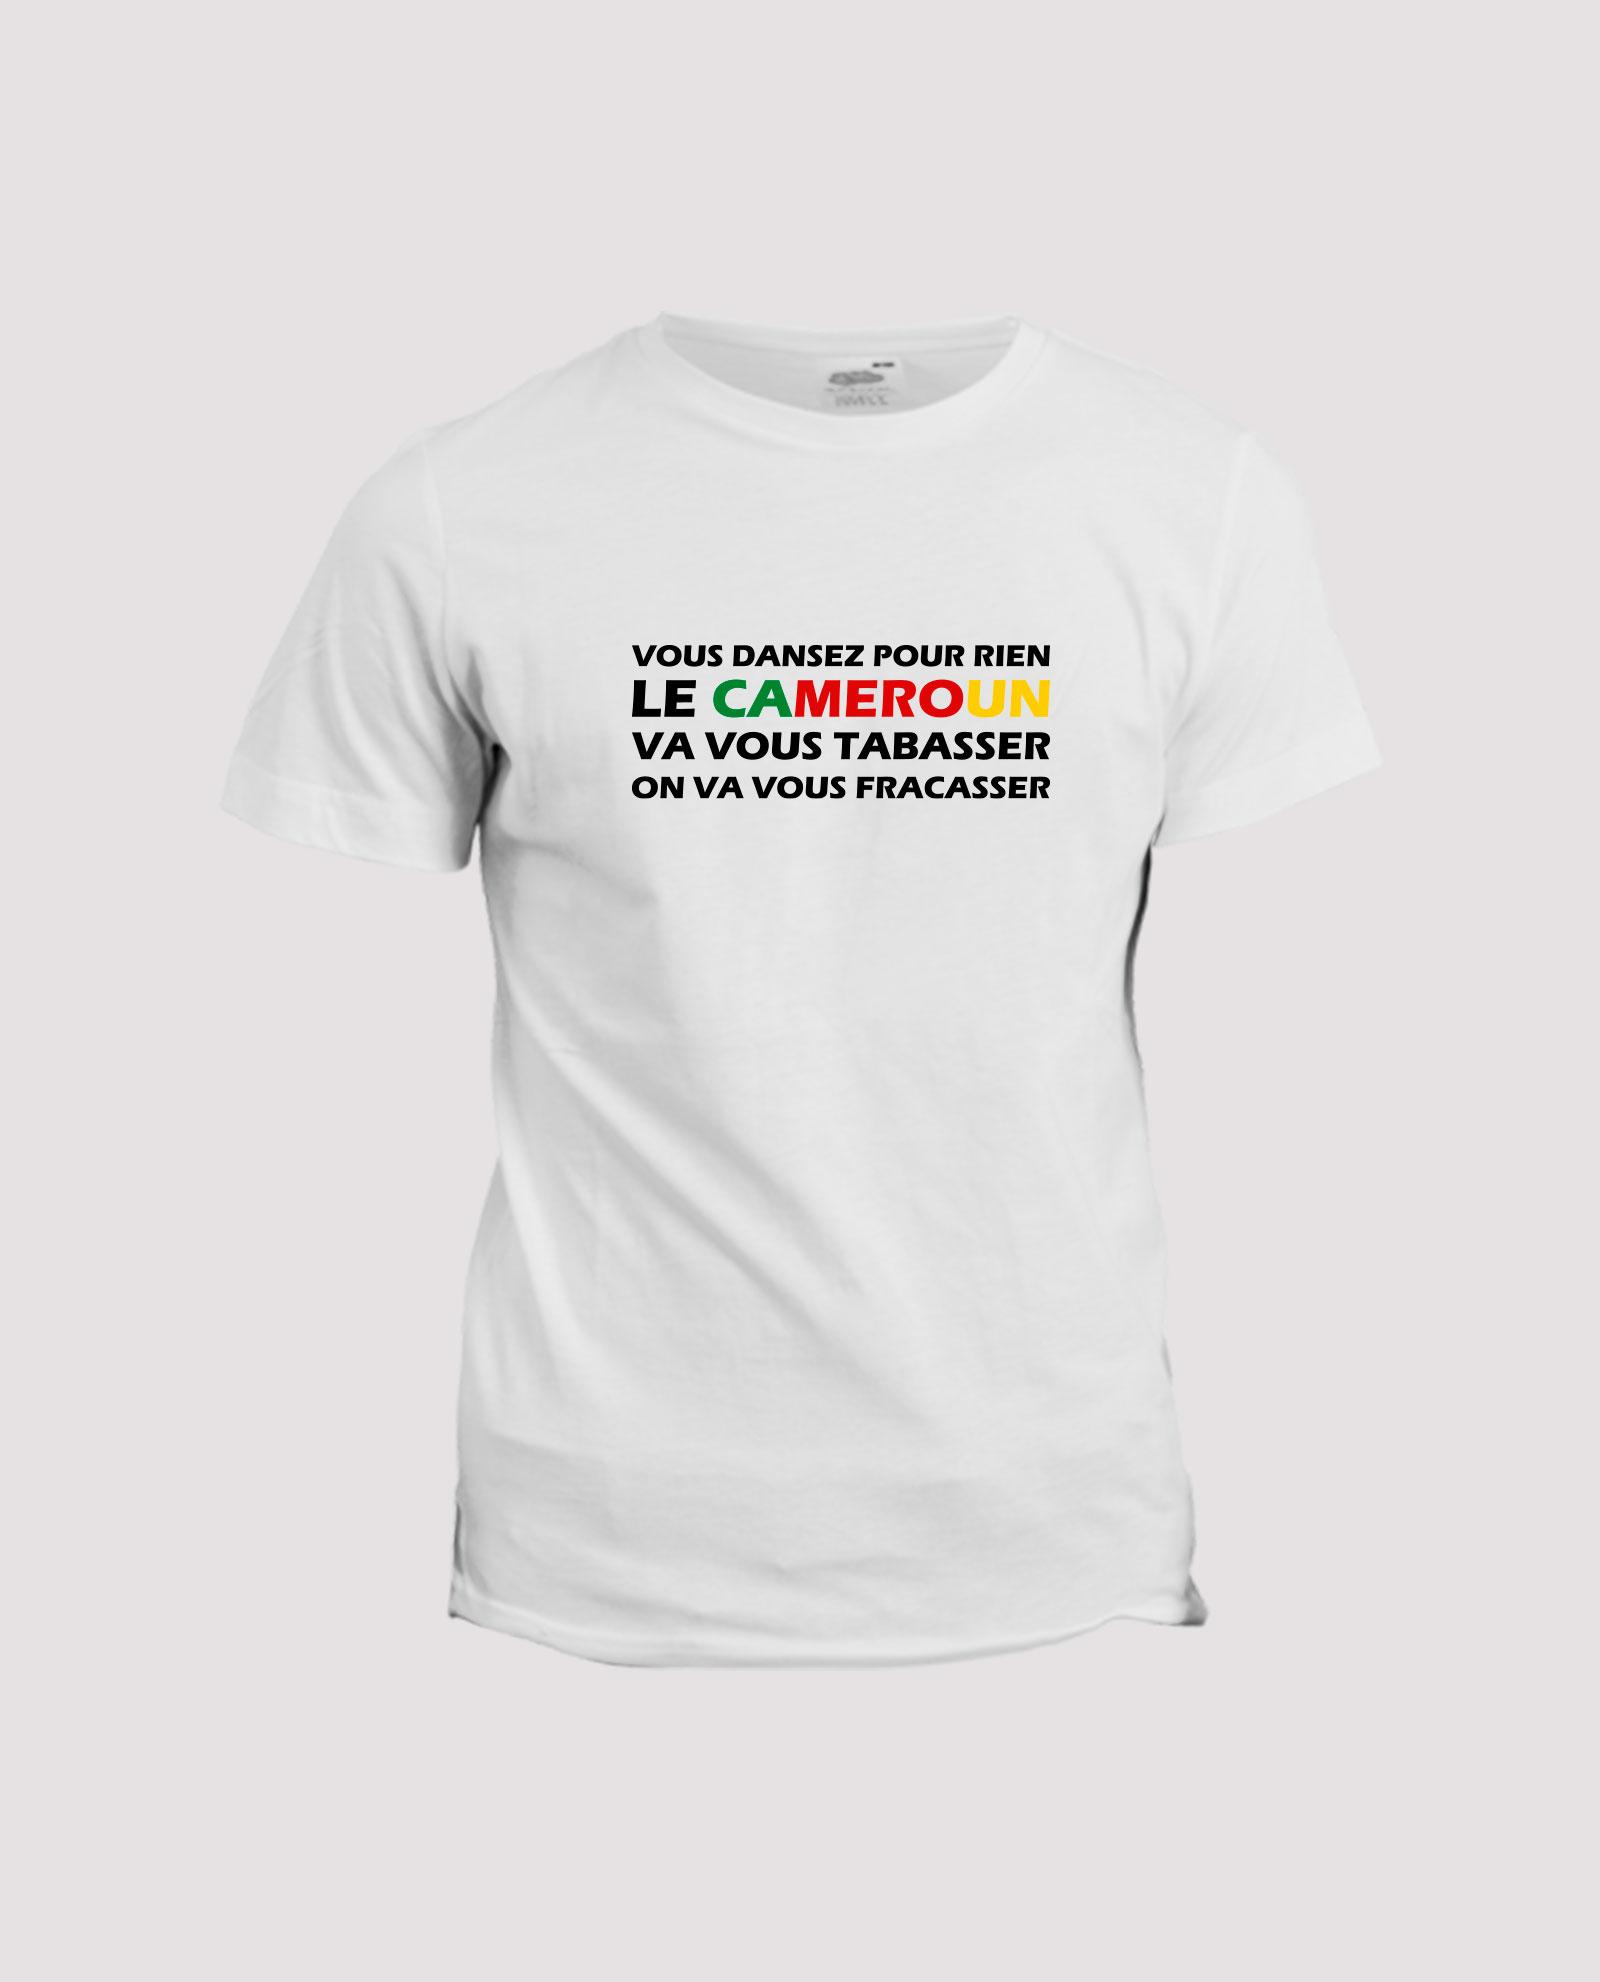 la-ligne-shop-t-shirt-football-le-cameroun-va-vous-tabasser